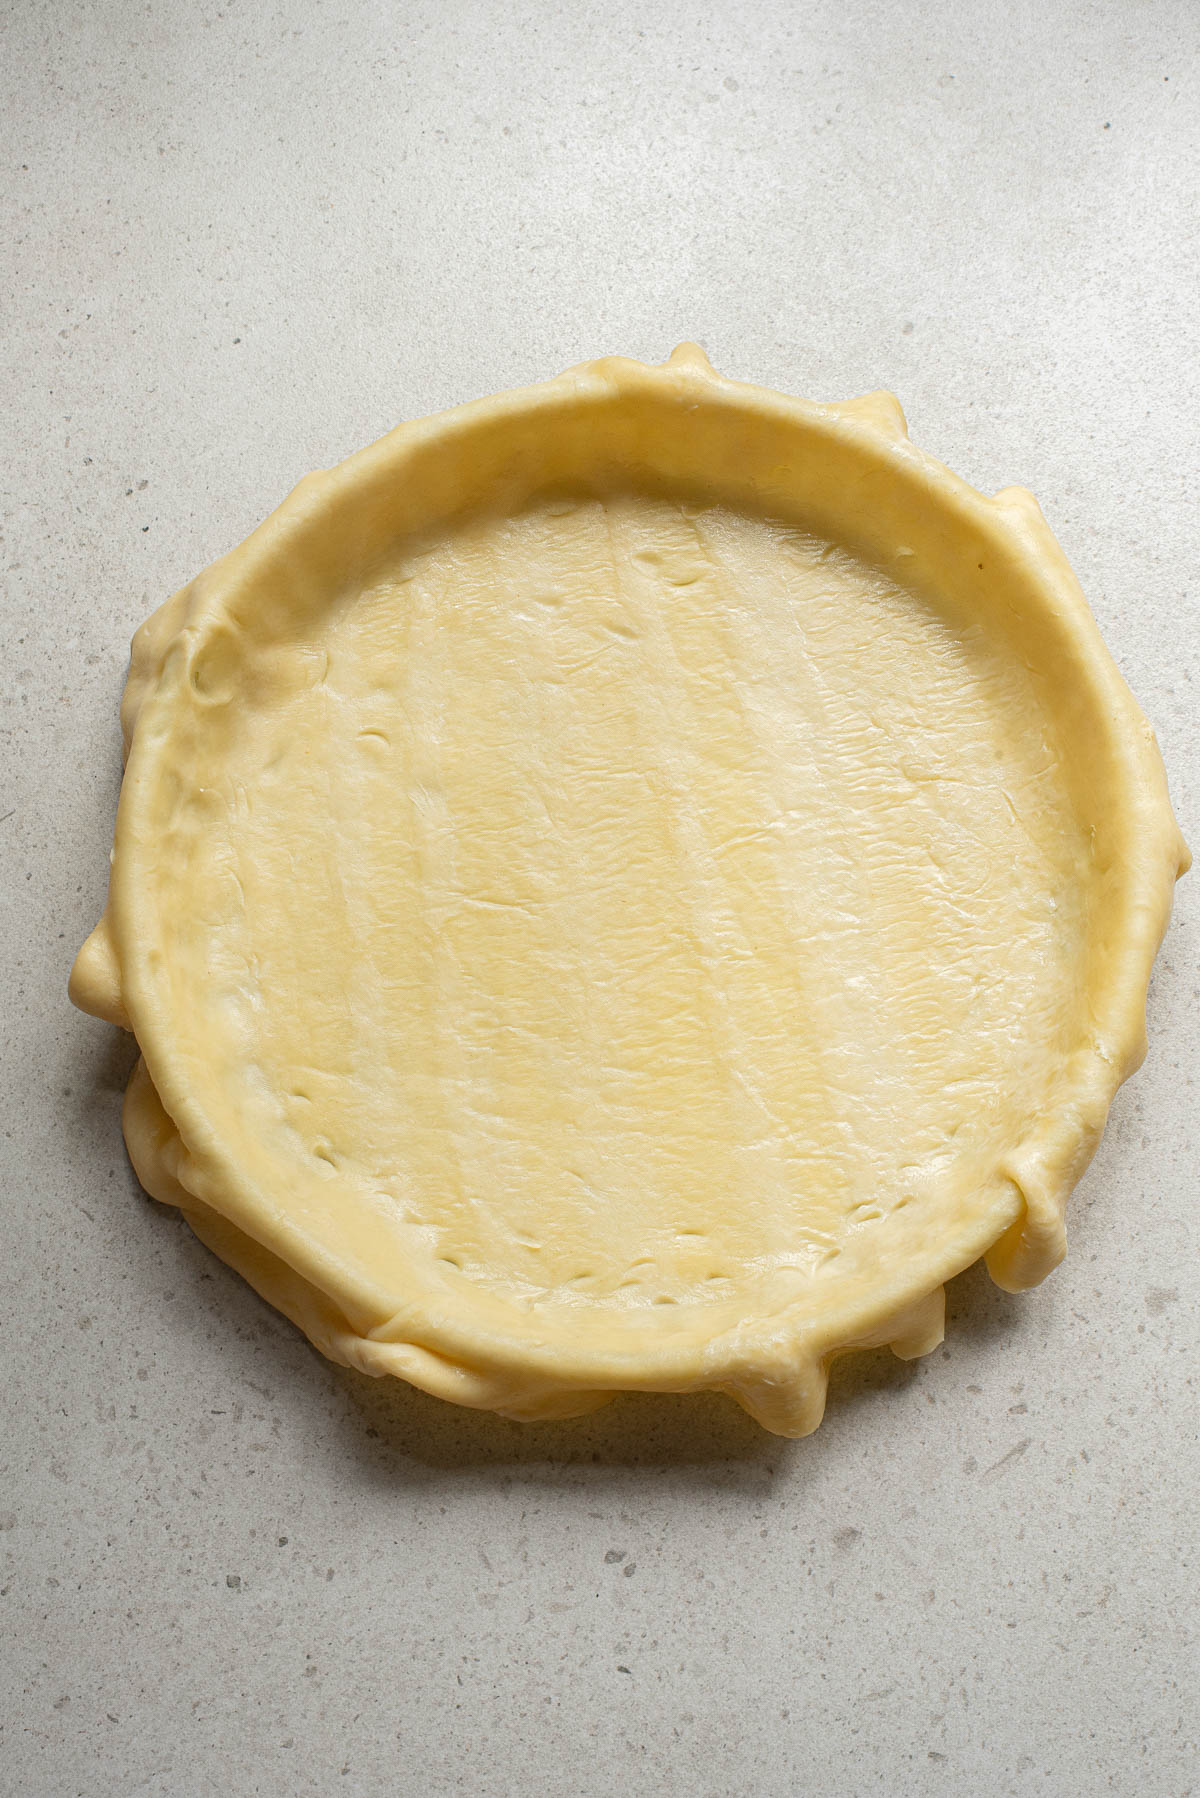 Pie crust in pie pan.